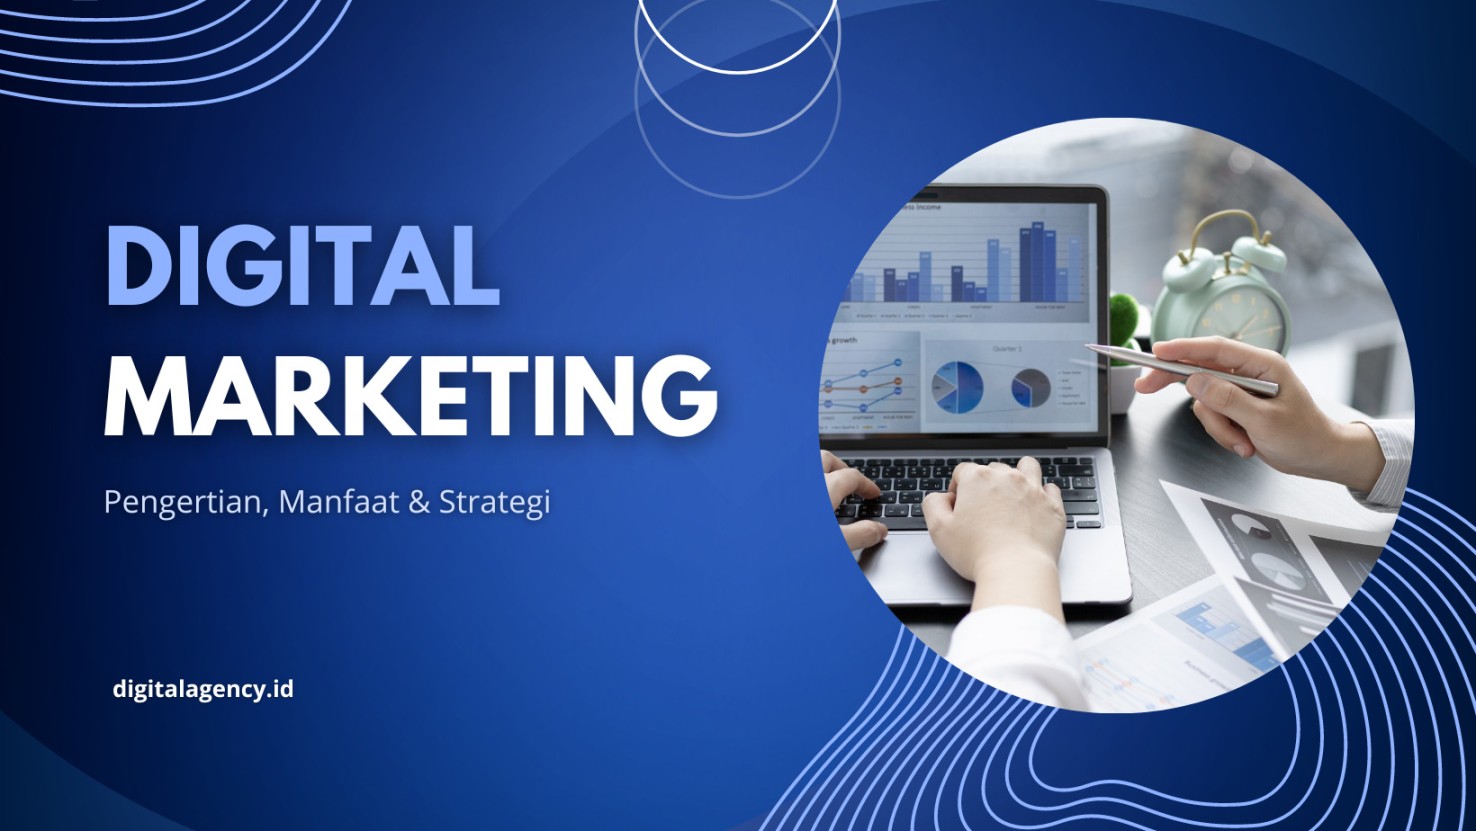 Apa Itu Digital Marketing? Pengertian, Manfaat dan Contoh Strategi